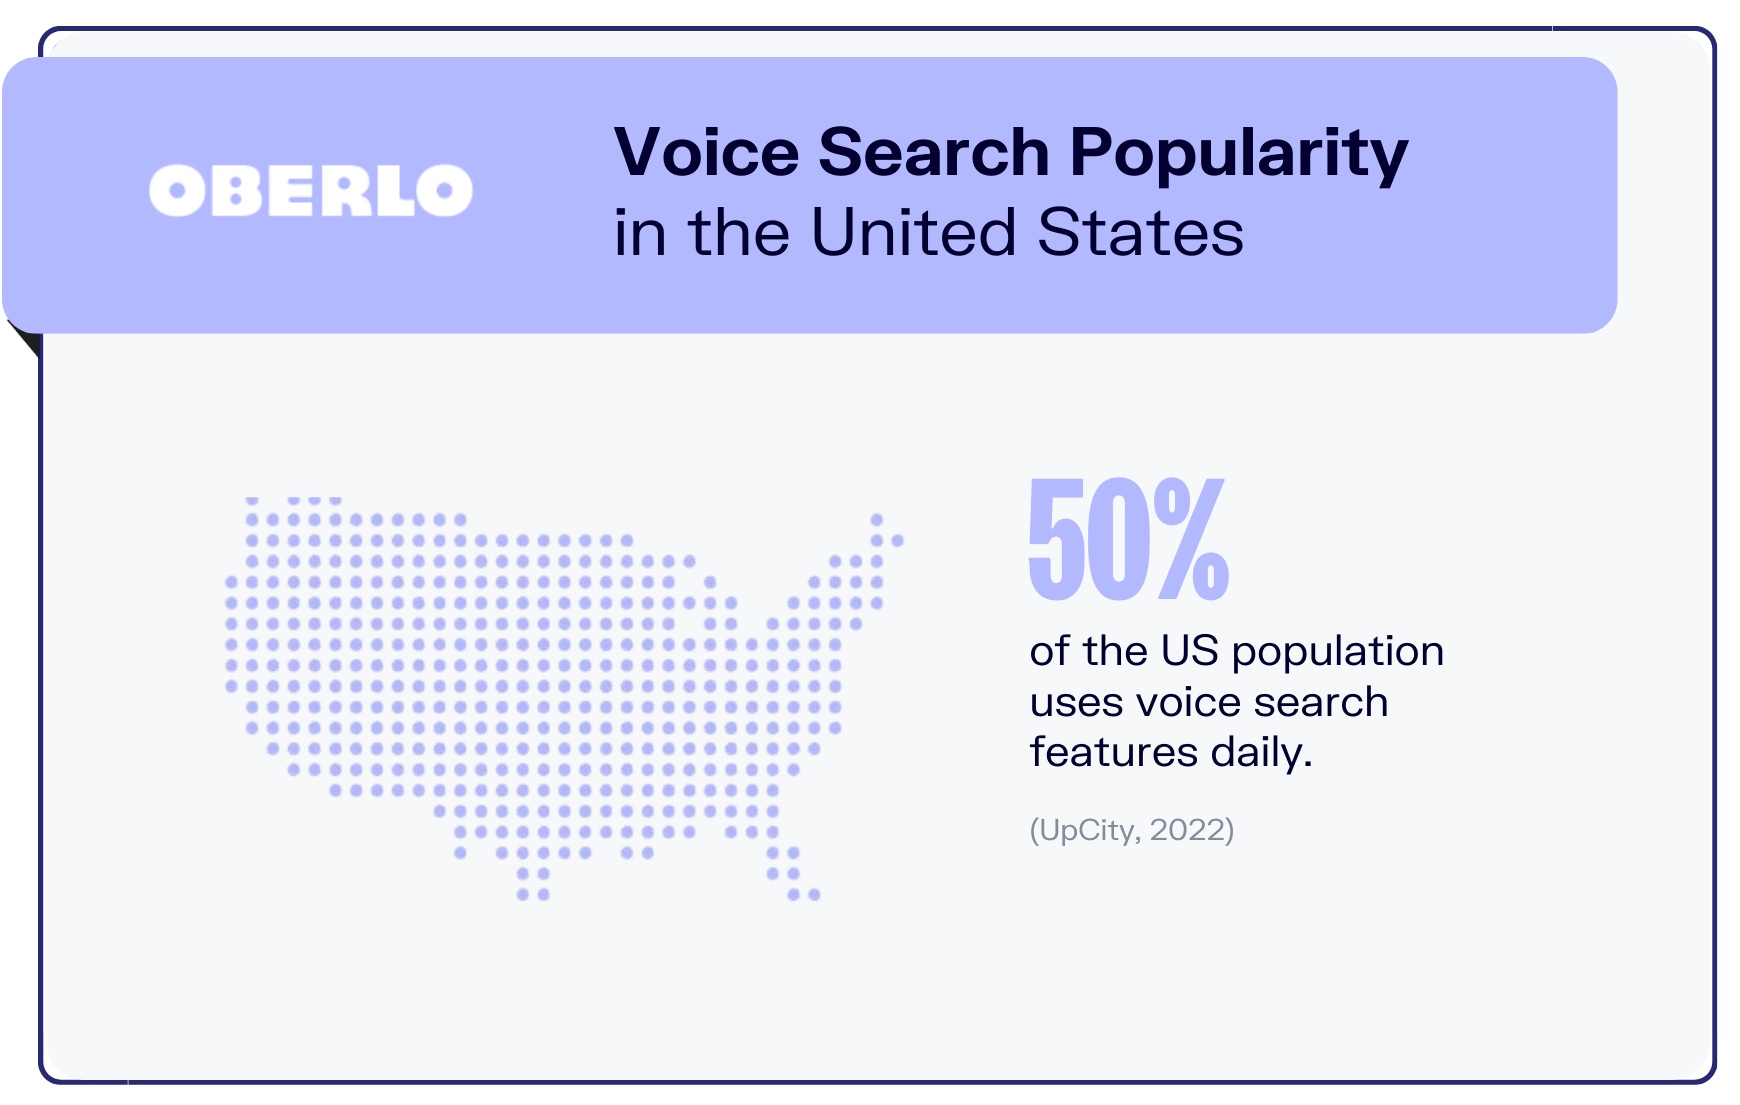 estatística de pesquisa por voz